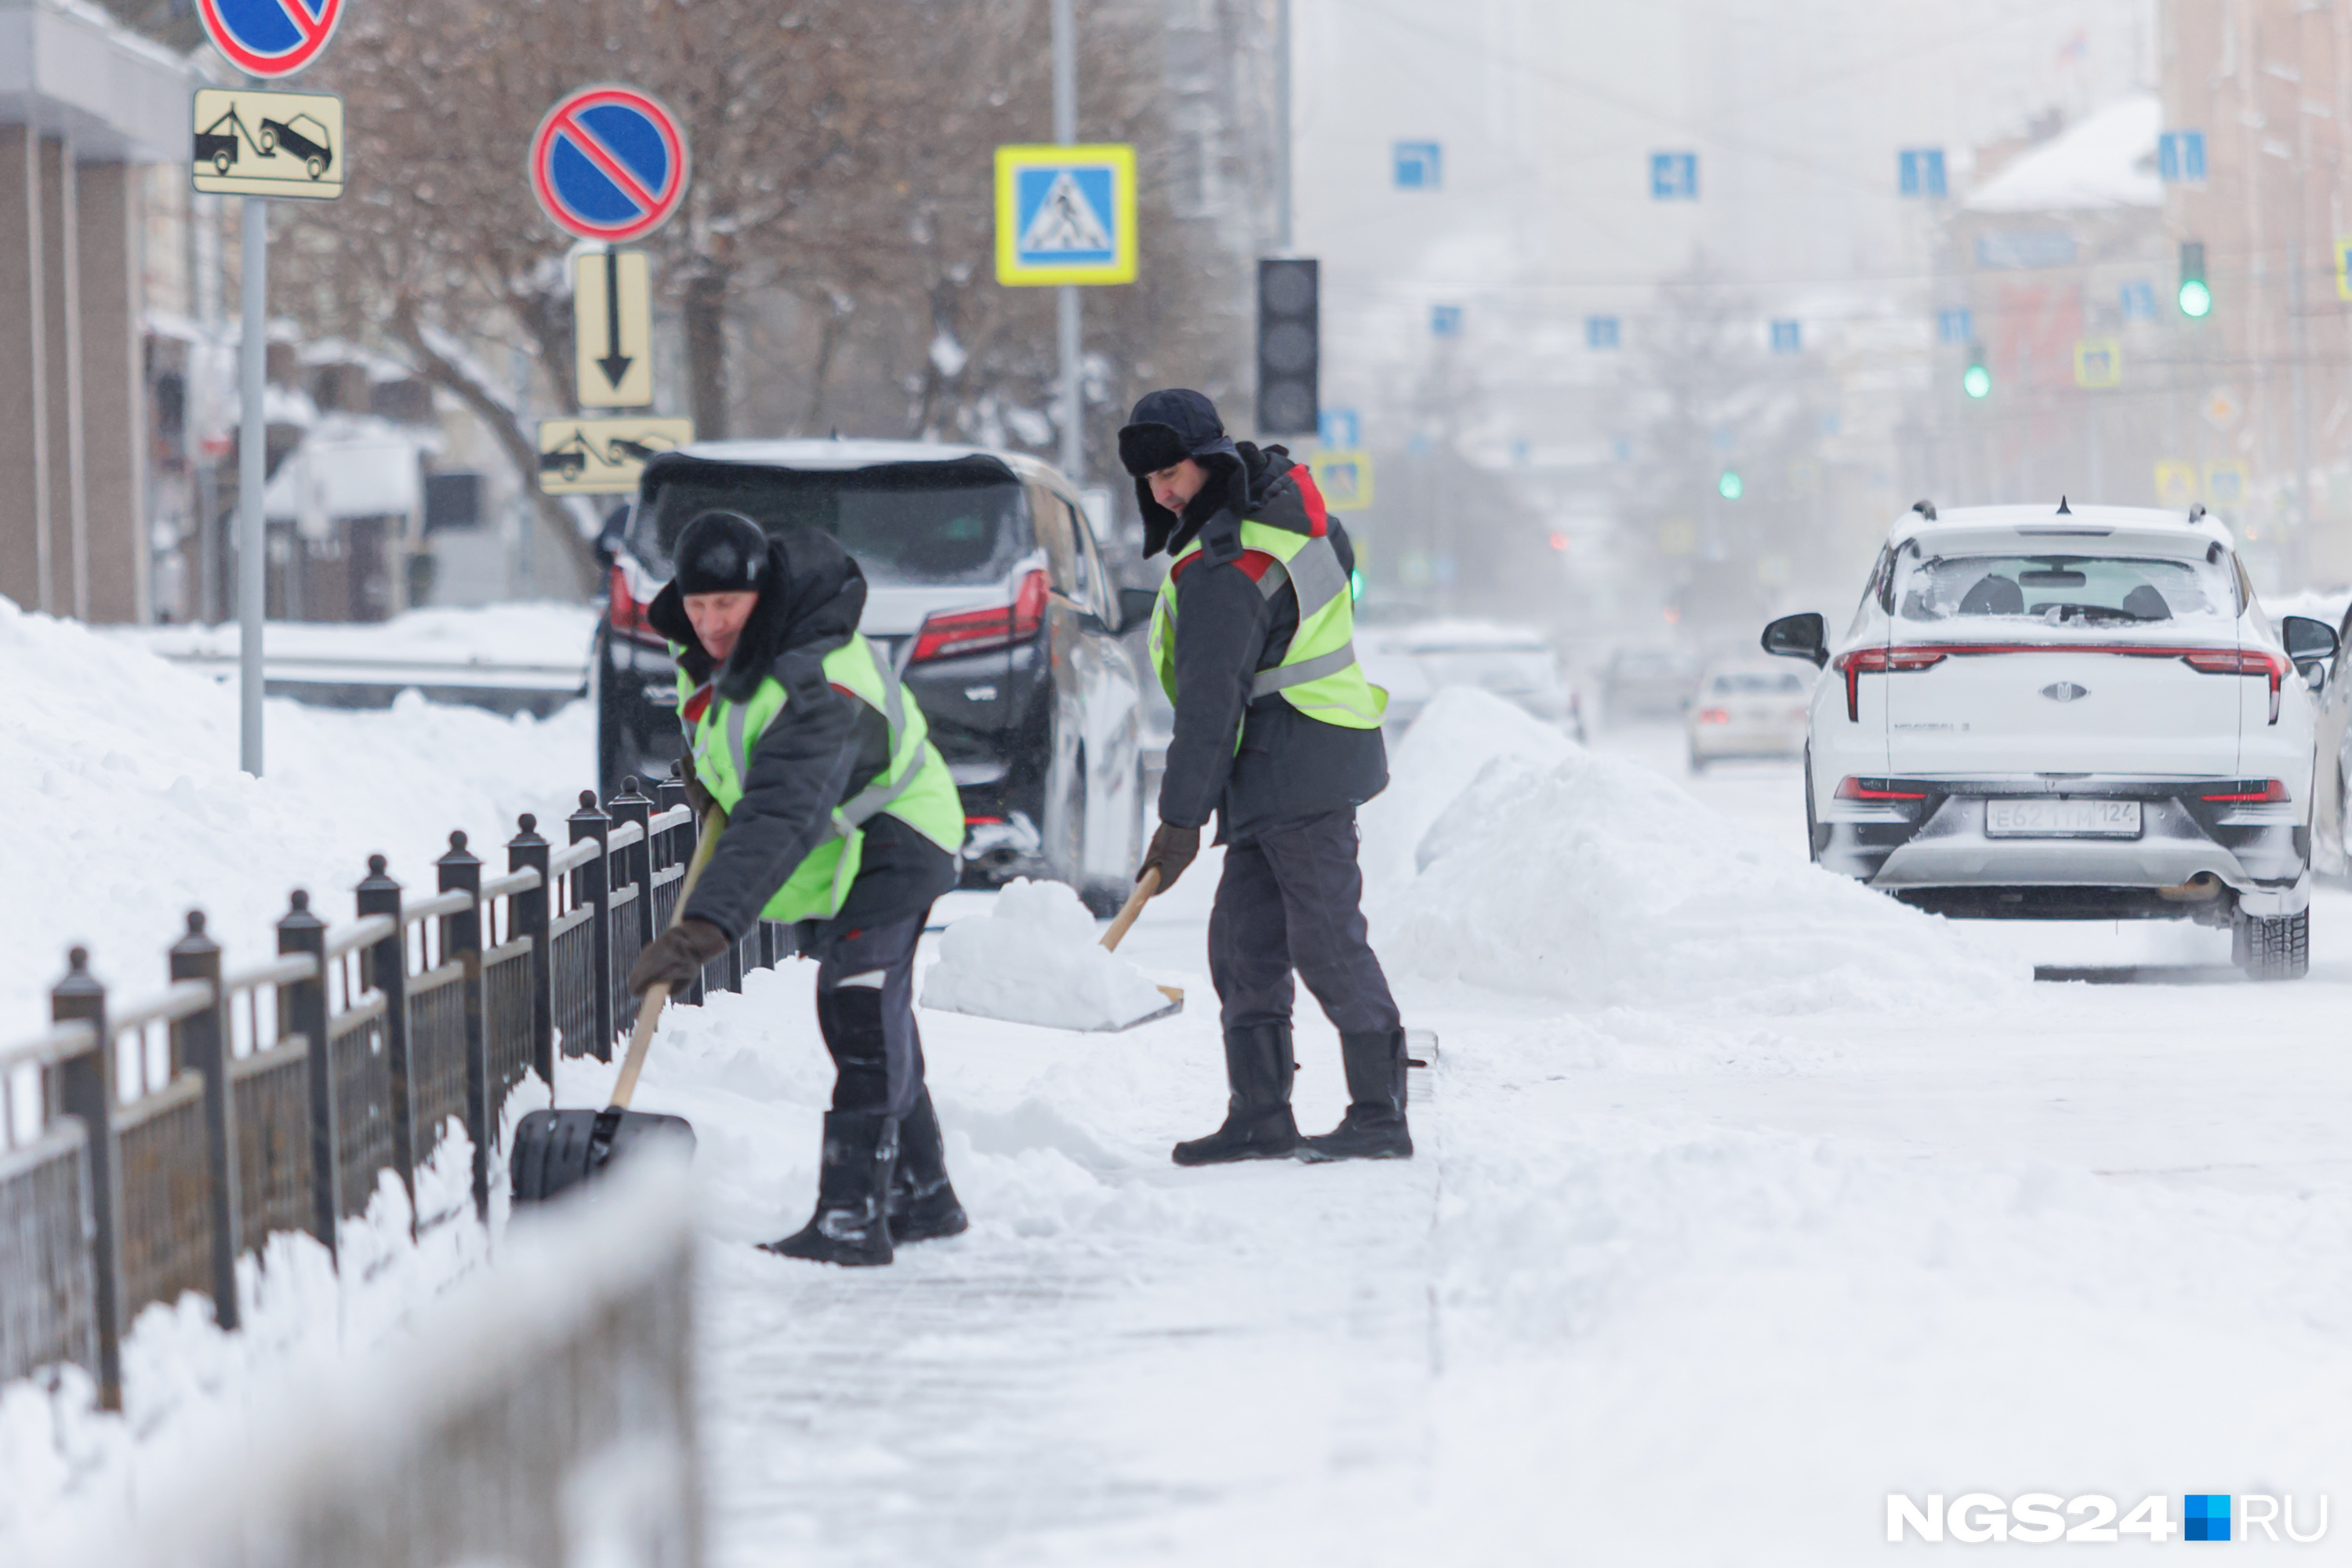 Тем временем дорожники усиленно убирают снег с улиц